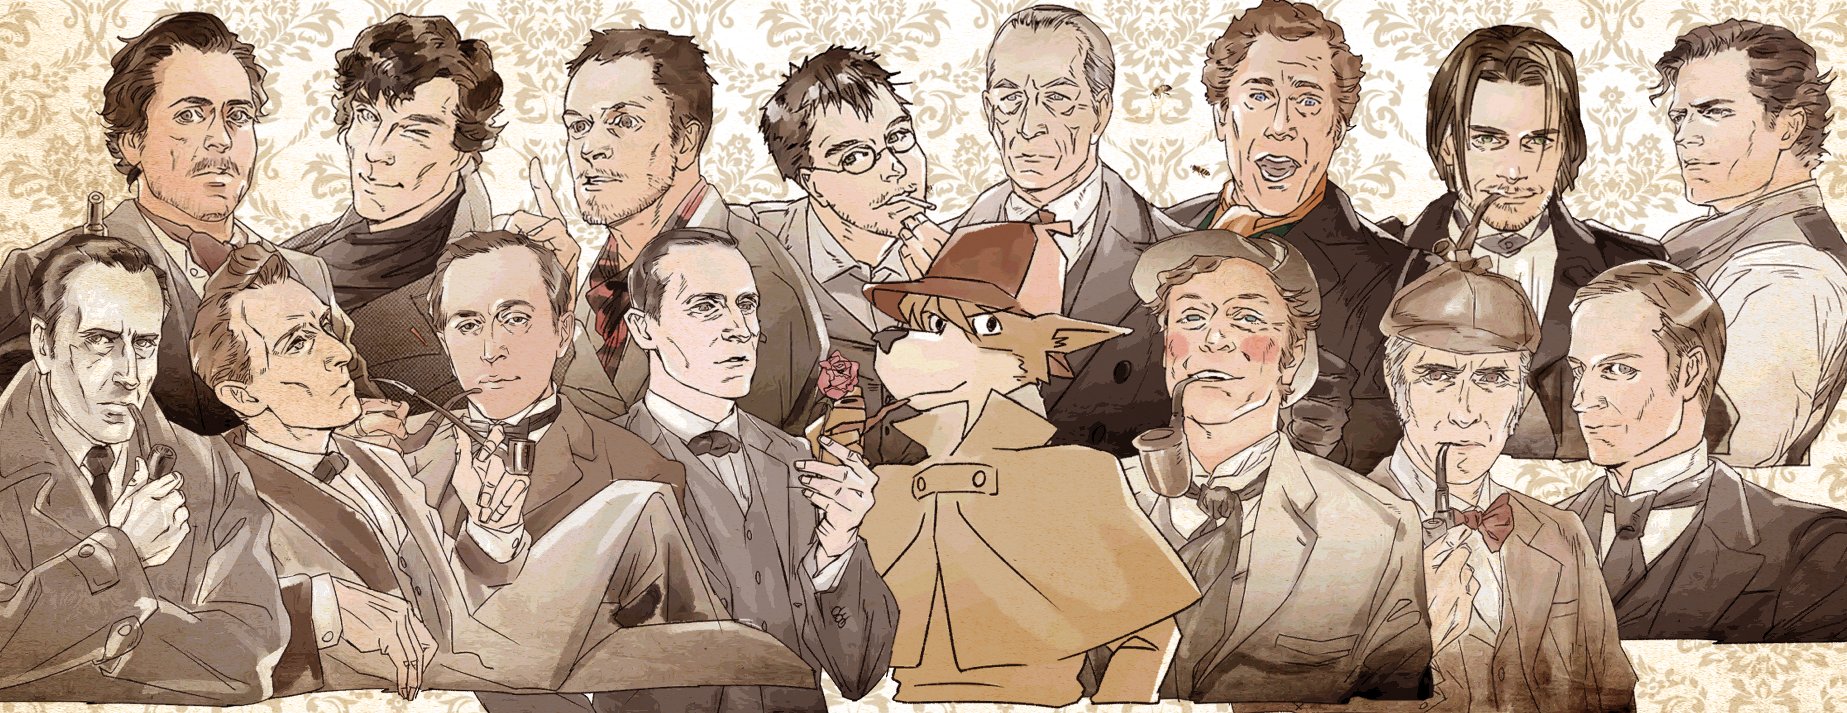 諏岸 1月6日はシャーロック ホームズのお誕生日と言われているそうなので 15人 1匹のホームズ ワトソン のイラスト動画 をお祝いに貼っておきますね どのホームズもいっぱい好き コナン ドイルが生み出した名探偵 シャーロック ホームズ 新旧